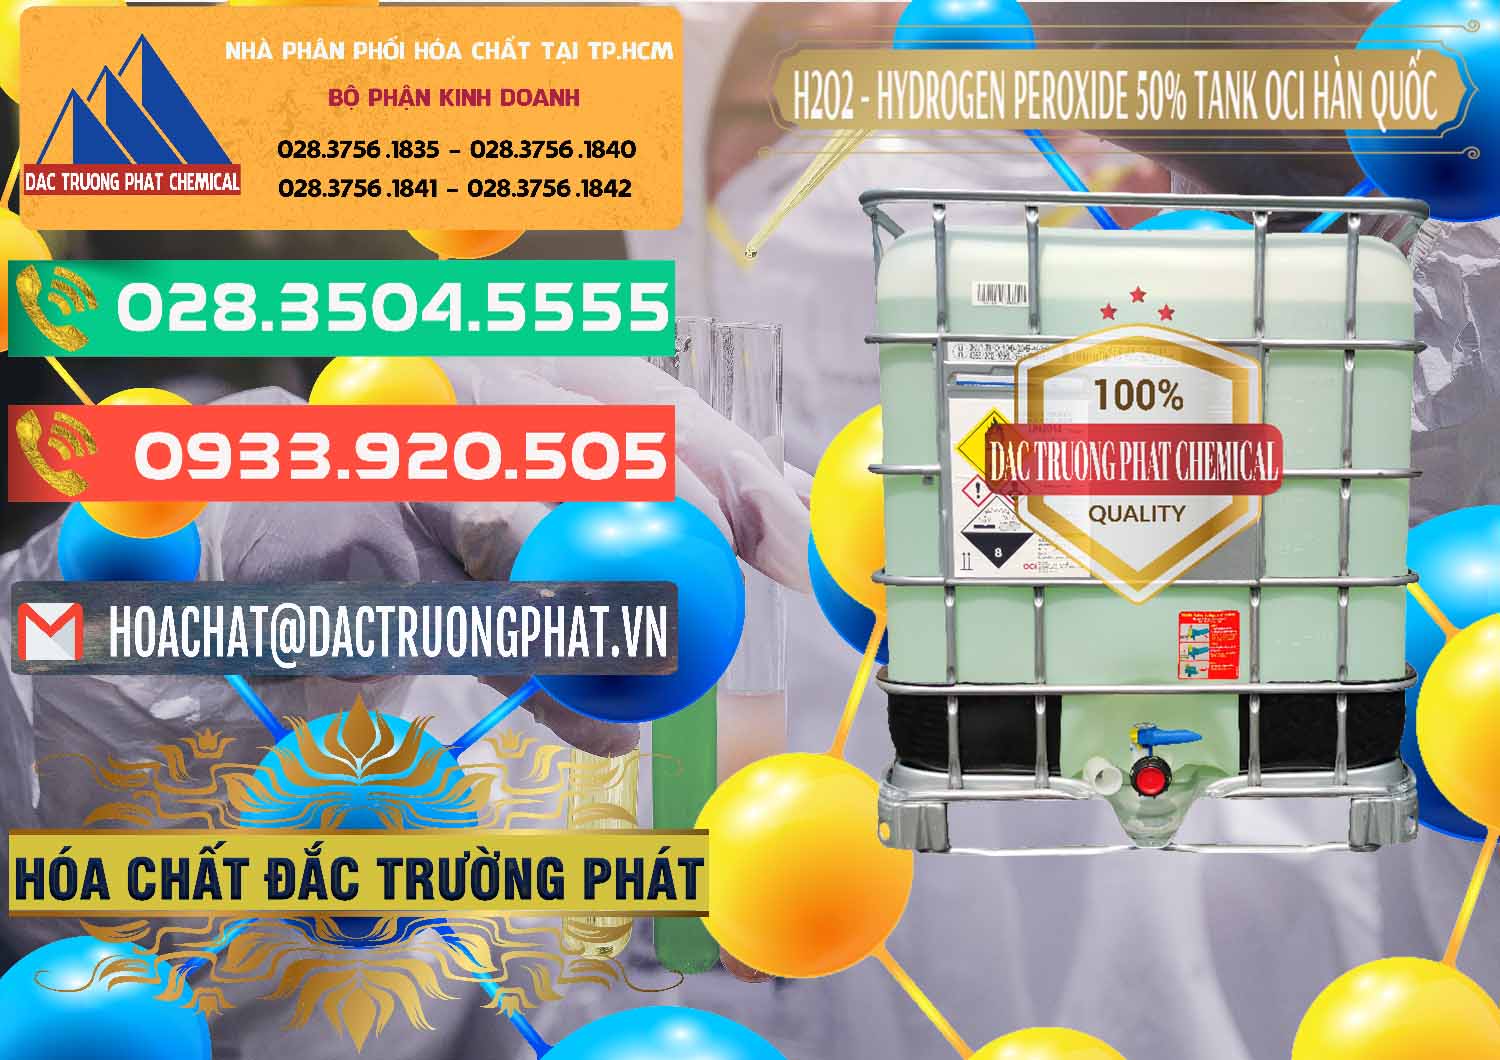 Nơi phân phối & bán H2O2 - Hydrogen Peroxide 50% Tank IBC Bồn Hàn Quốc OCI - 0074 - Chuyên phân phối ( nhập khẩu ) hóa chất tại TP.HCM - congtyhoachat.com.vn